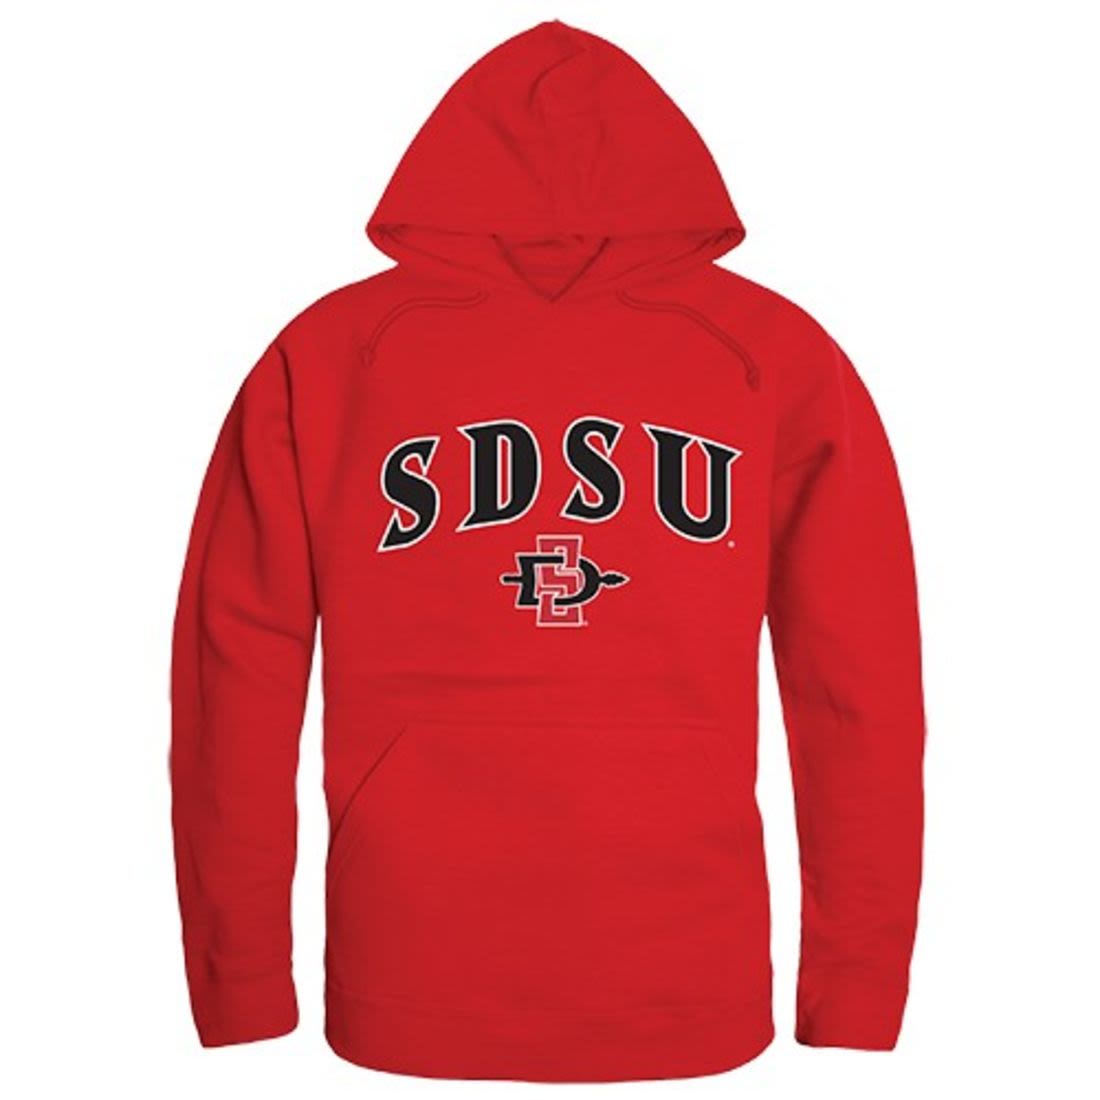 SDSU San Diego State University Aztecs Campus Hoodie Sweatshirt Red-Campus-Wardrobe